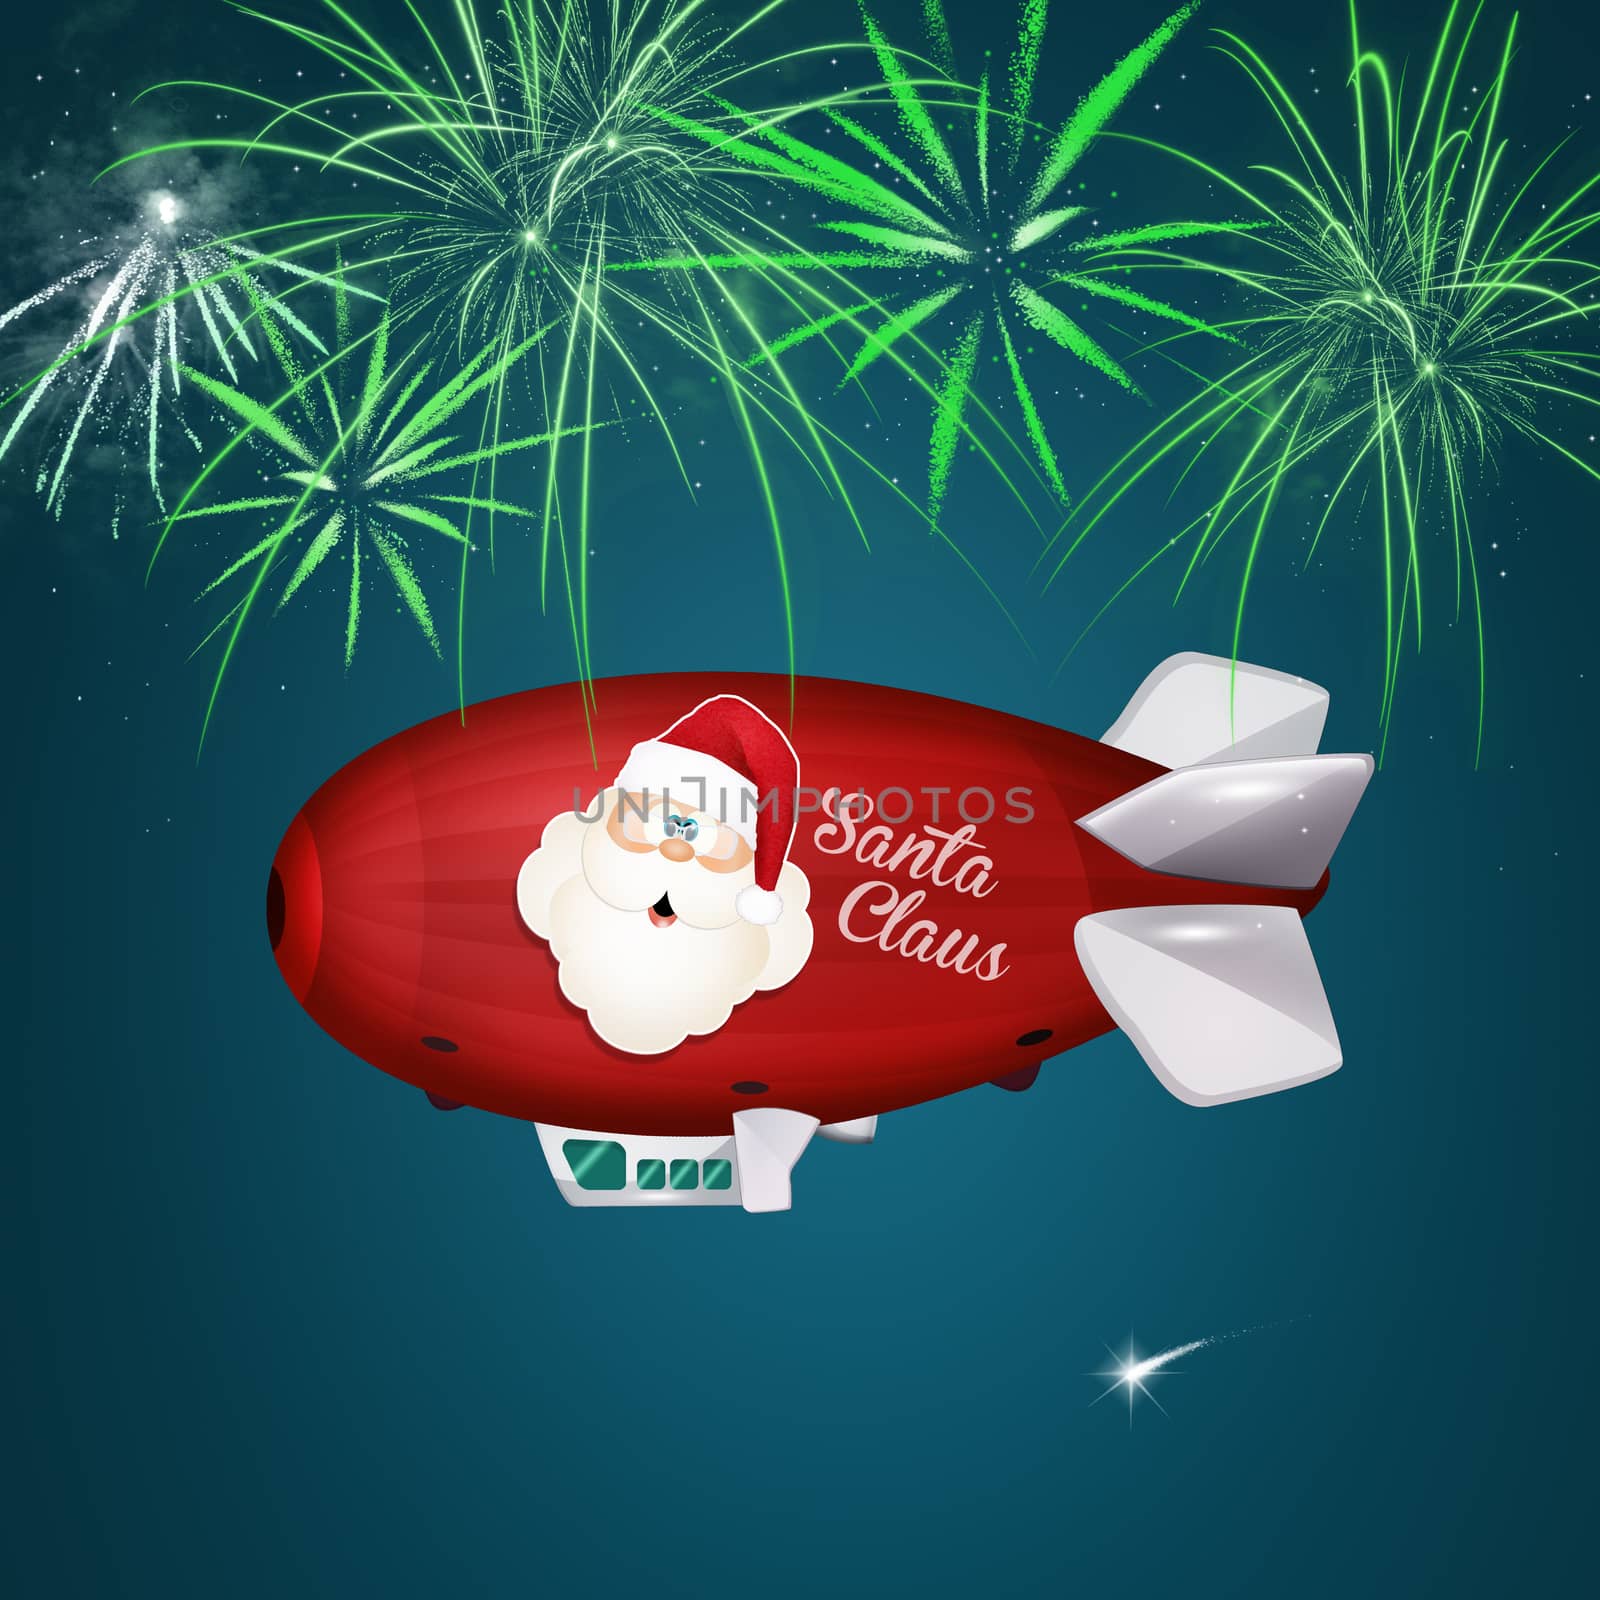 Santa Claus on airship by adrenalina